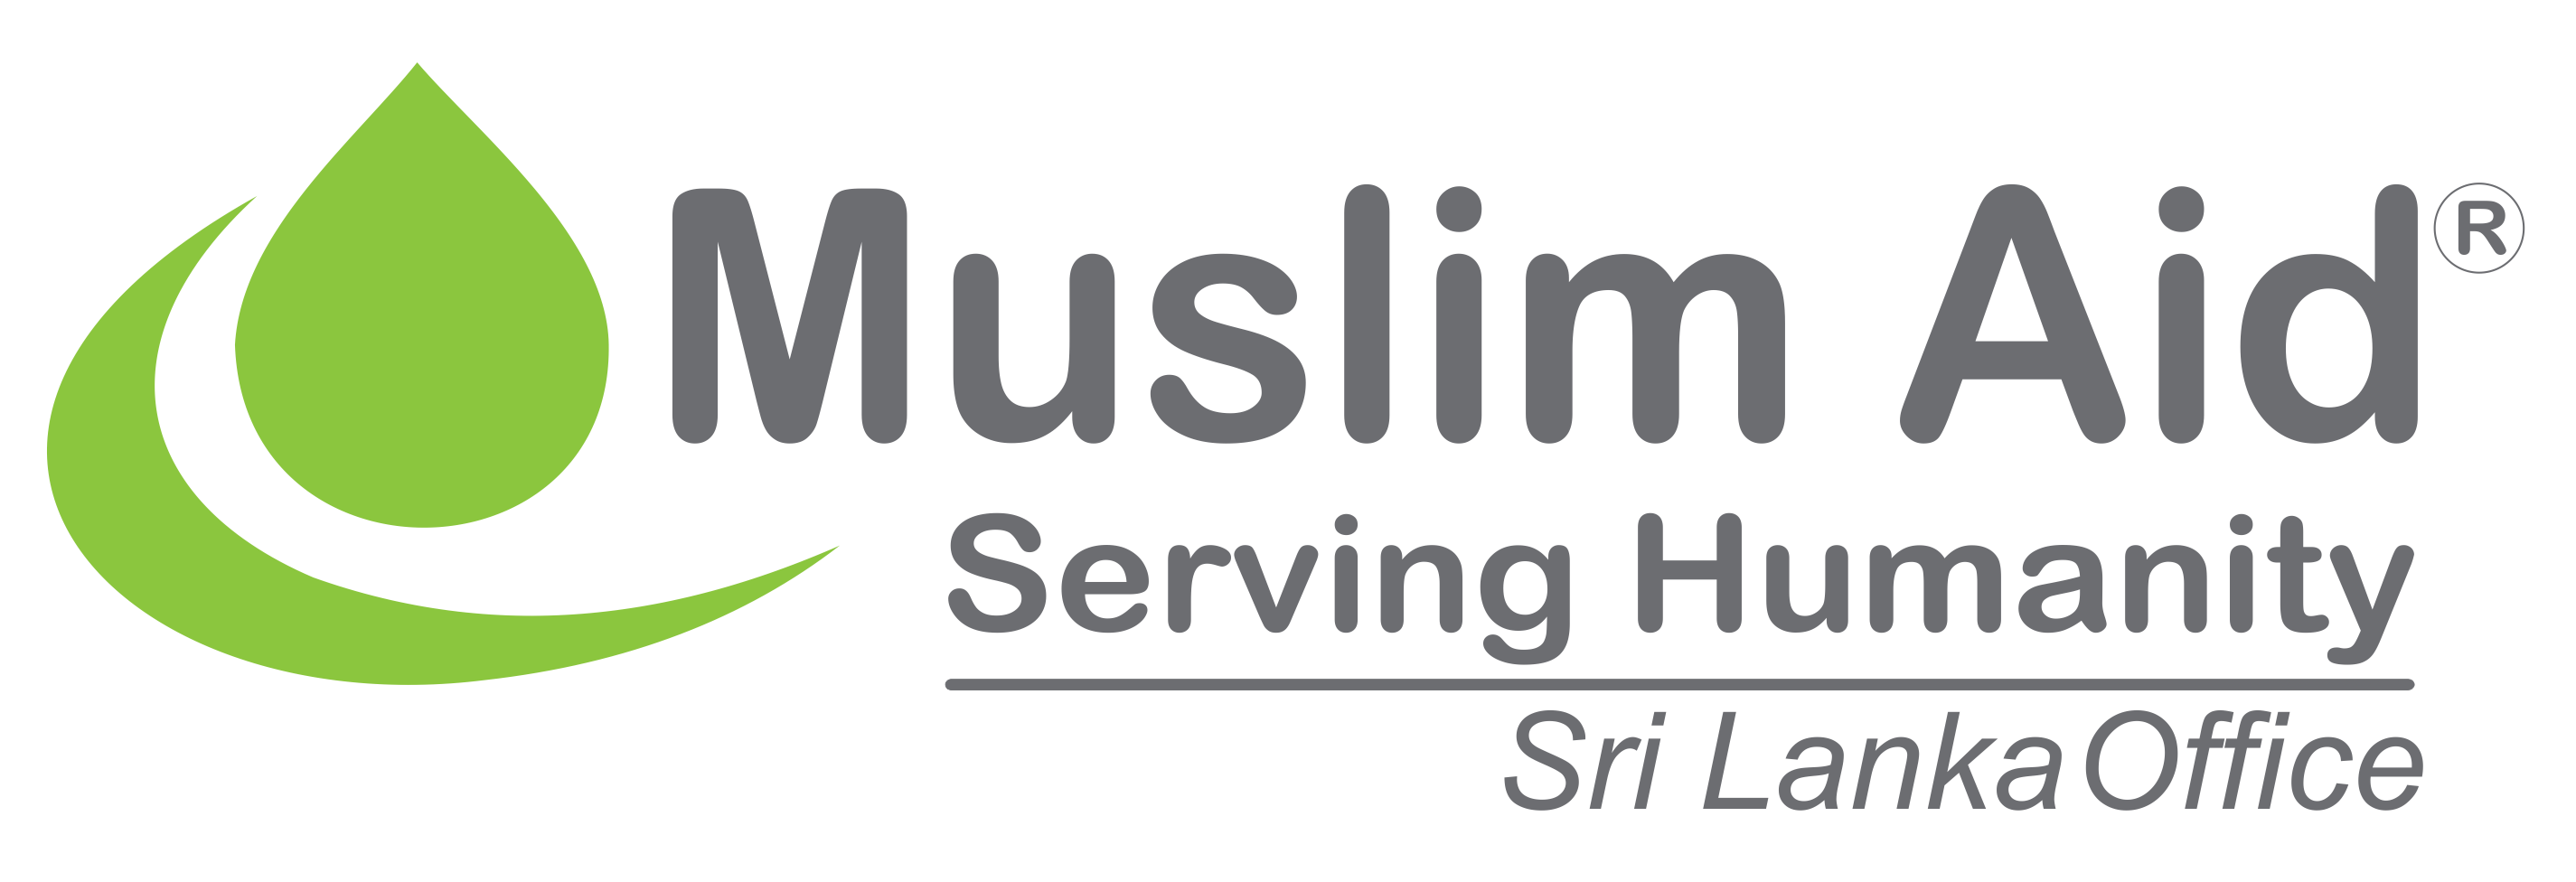 Muslim Aid Sri Lanka